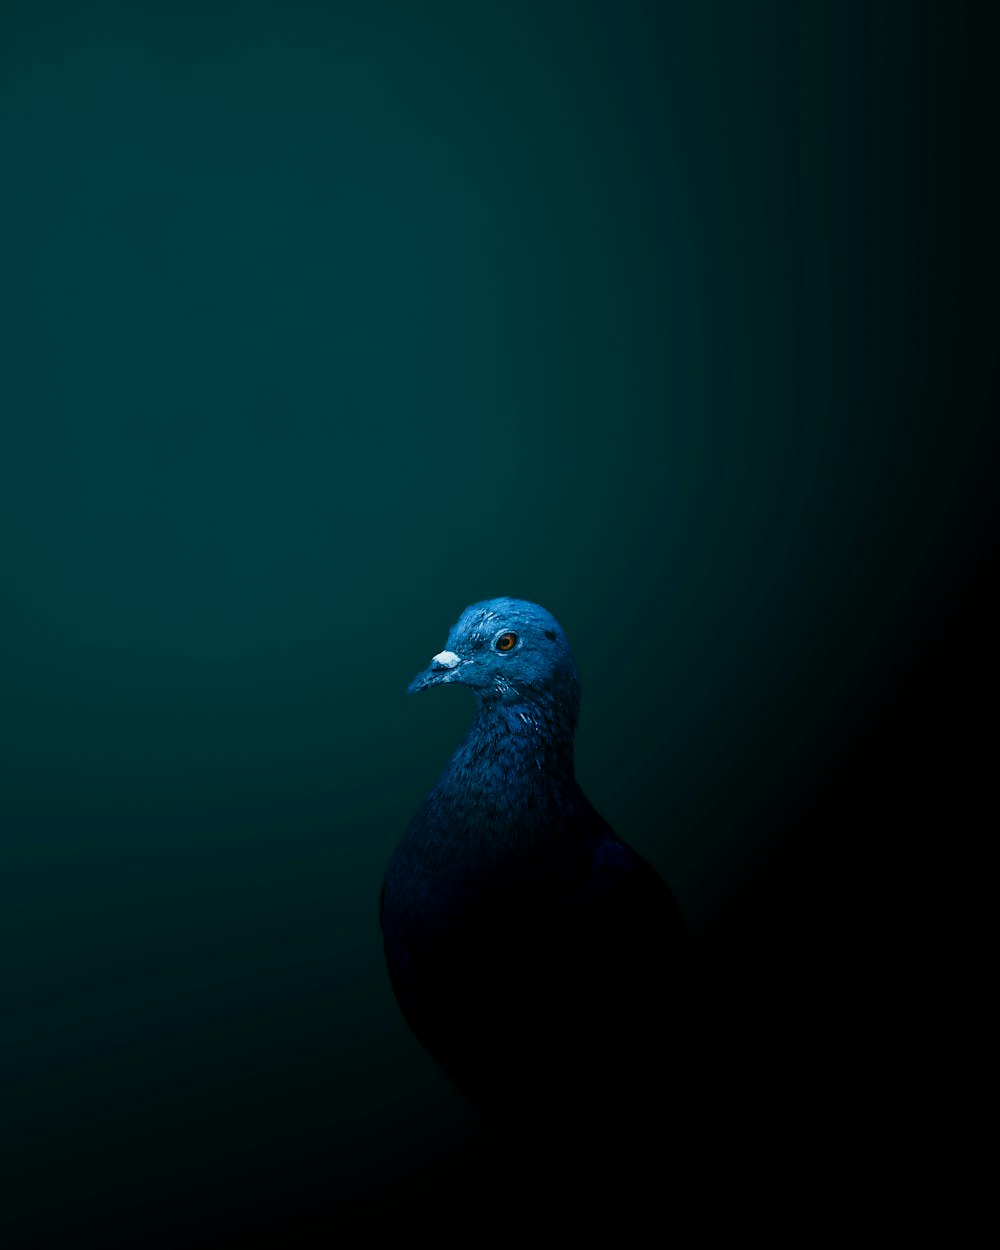 Un pájaro azul está parado en la oscuridad